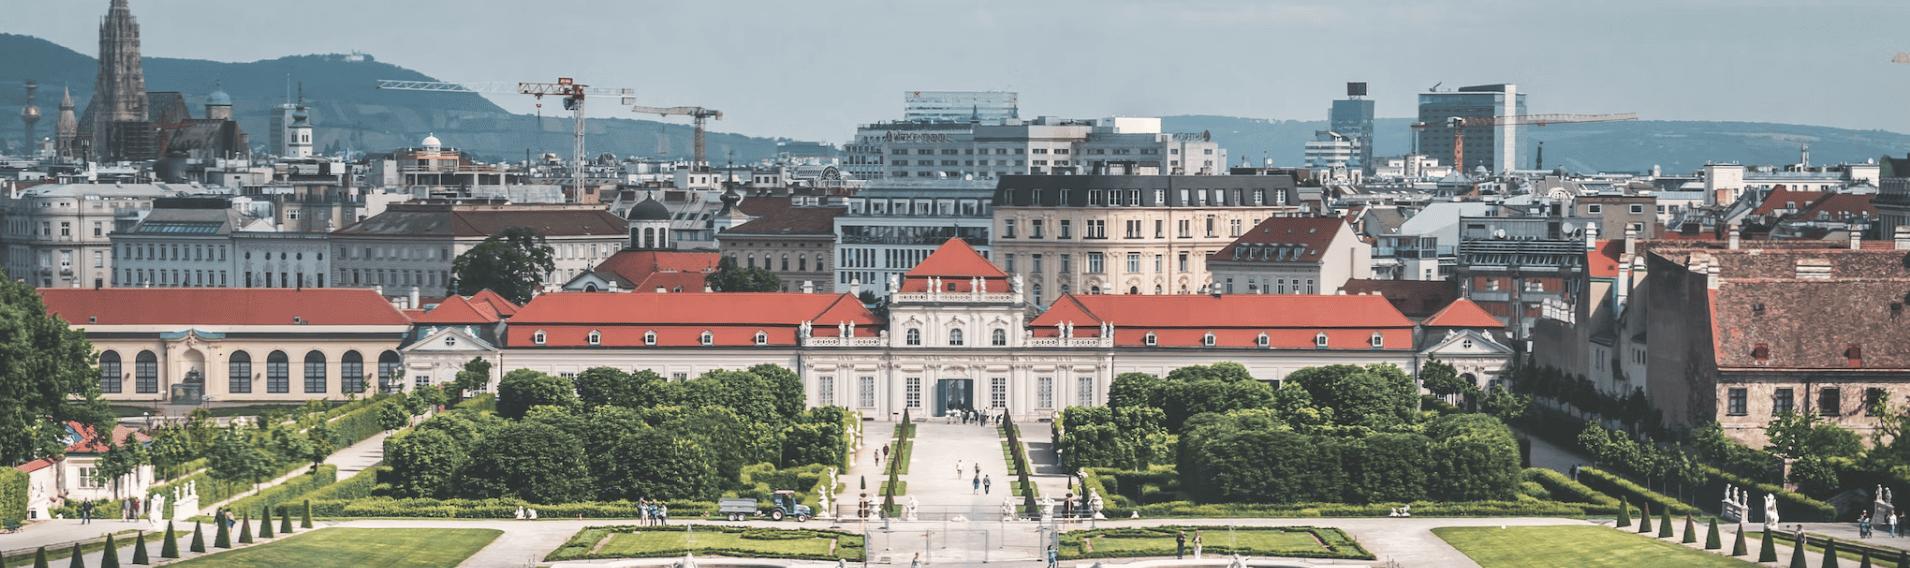 Liste von 3 großen Bauträgern in Wien